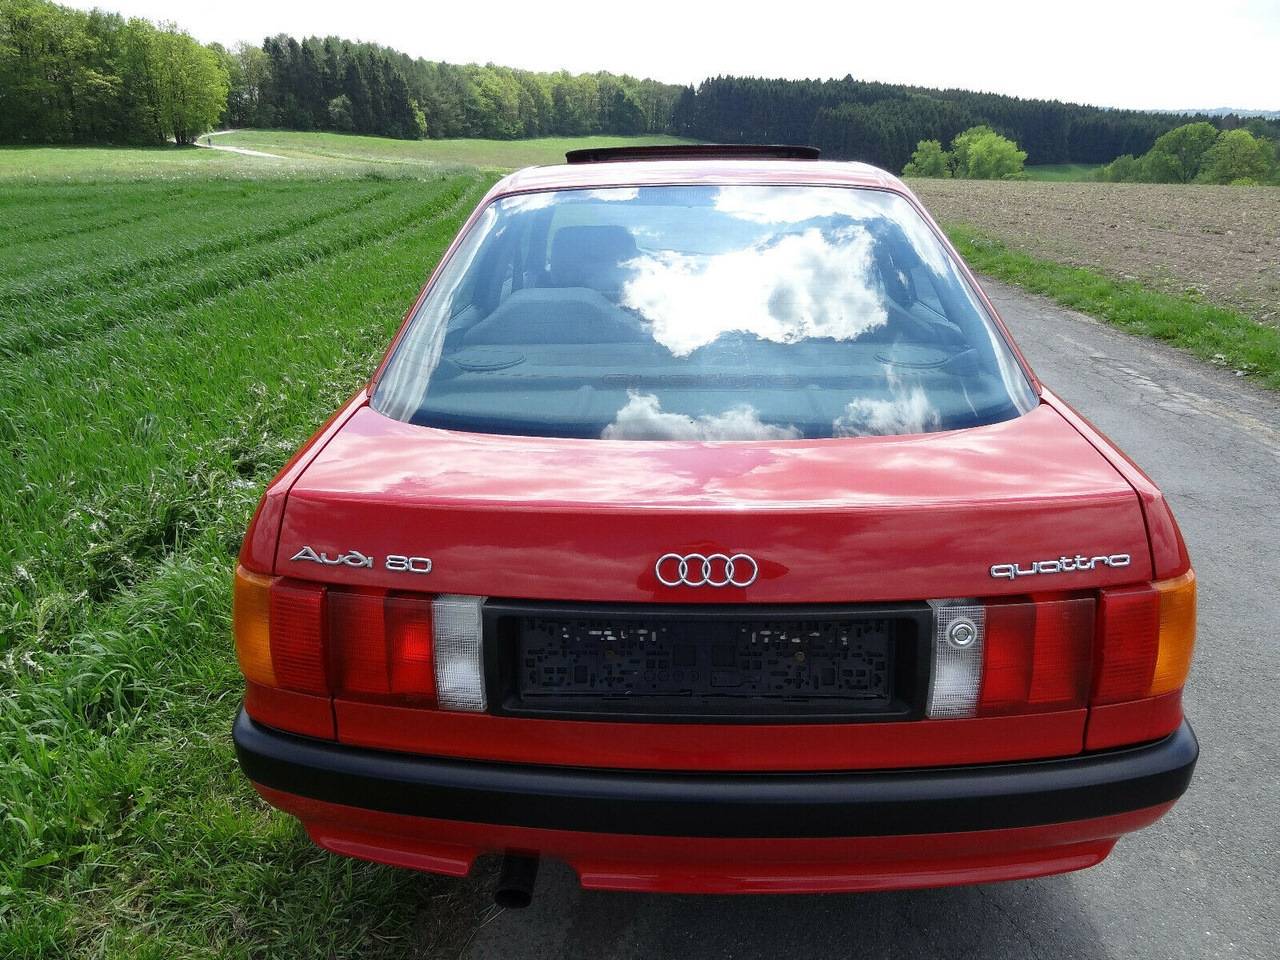 Audi 80 B3 сегодня: в чем сила, брат?